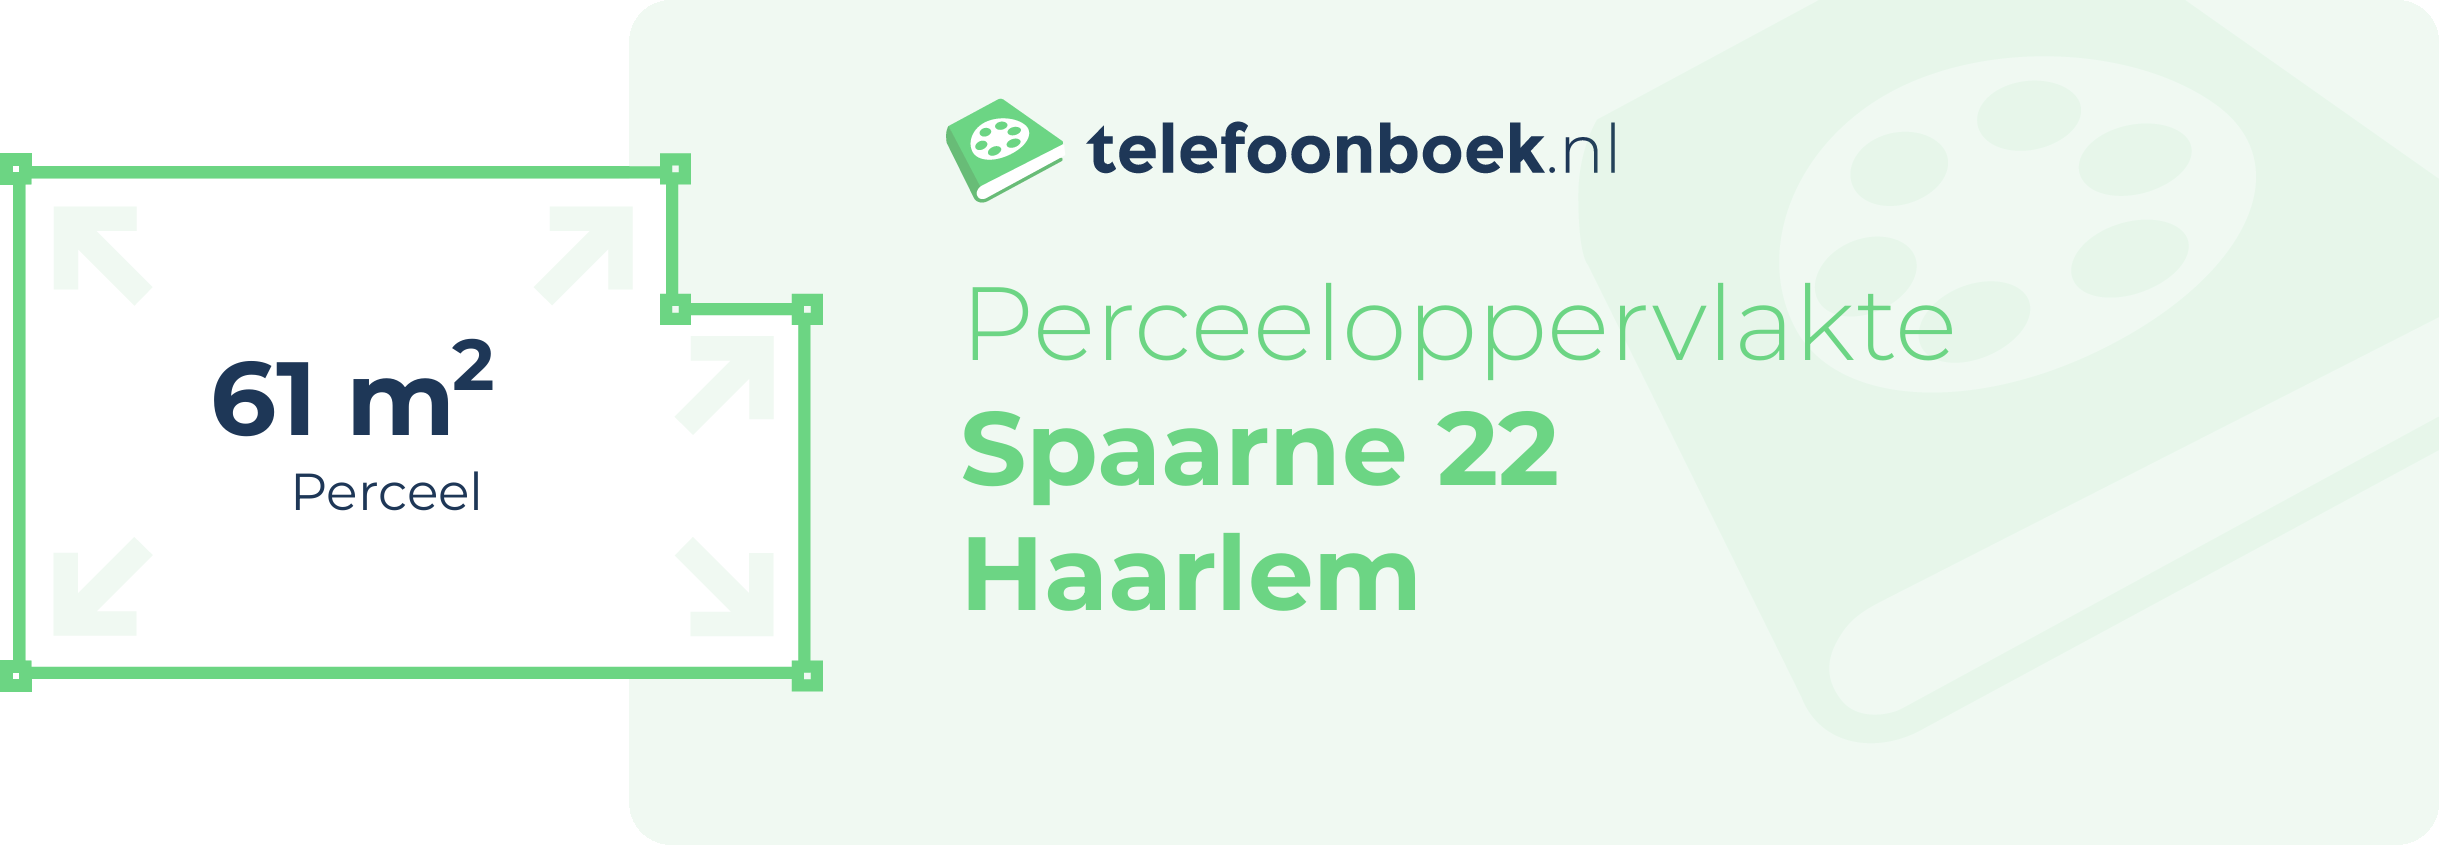 Perceeloppervlakte Spaarne 22 Haarlem